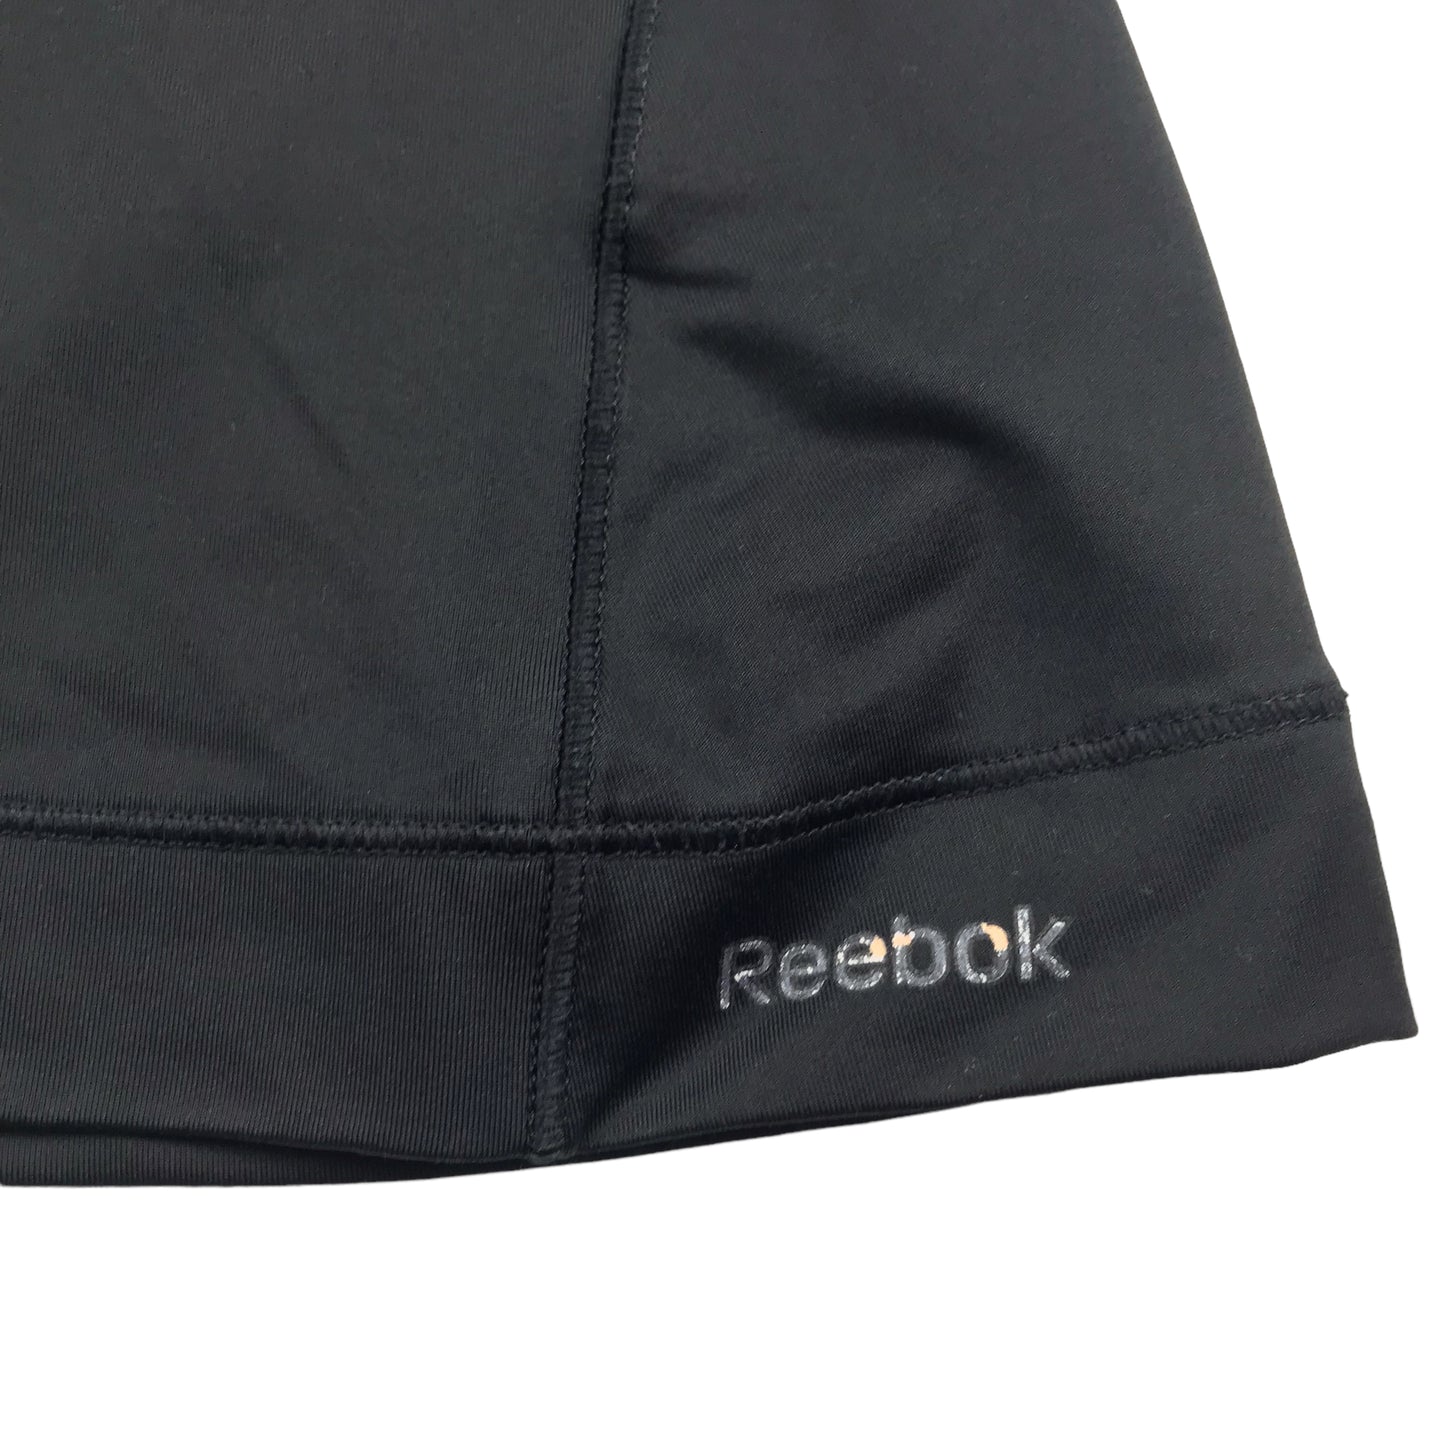 Reebok Black Base Layer Top Women's Size XS